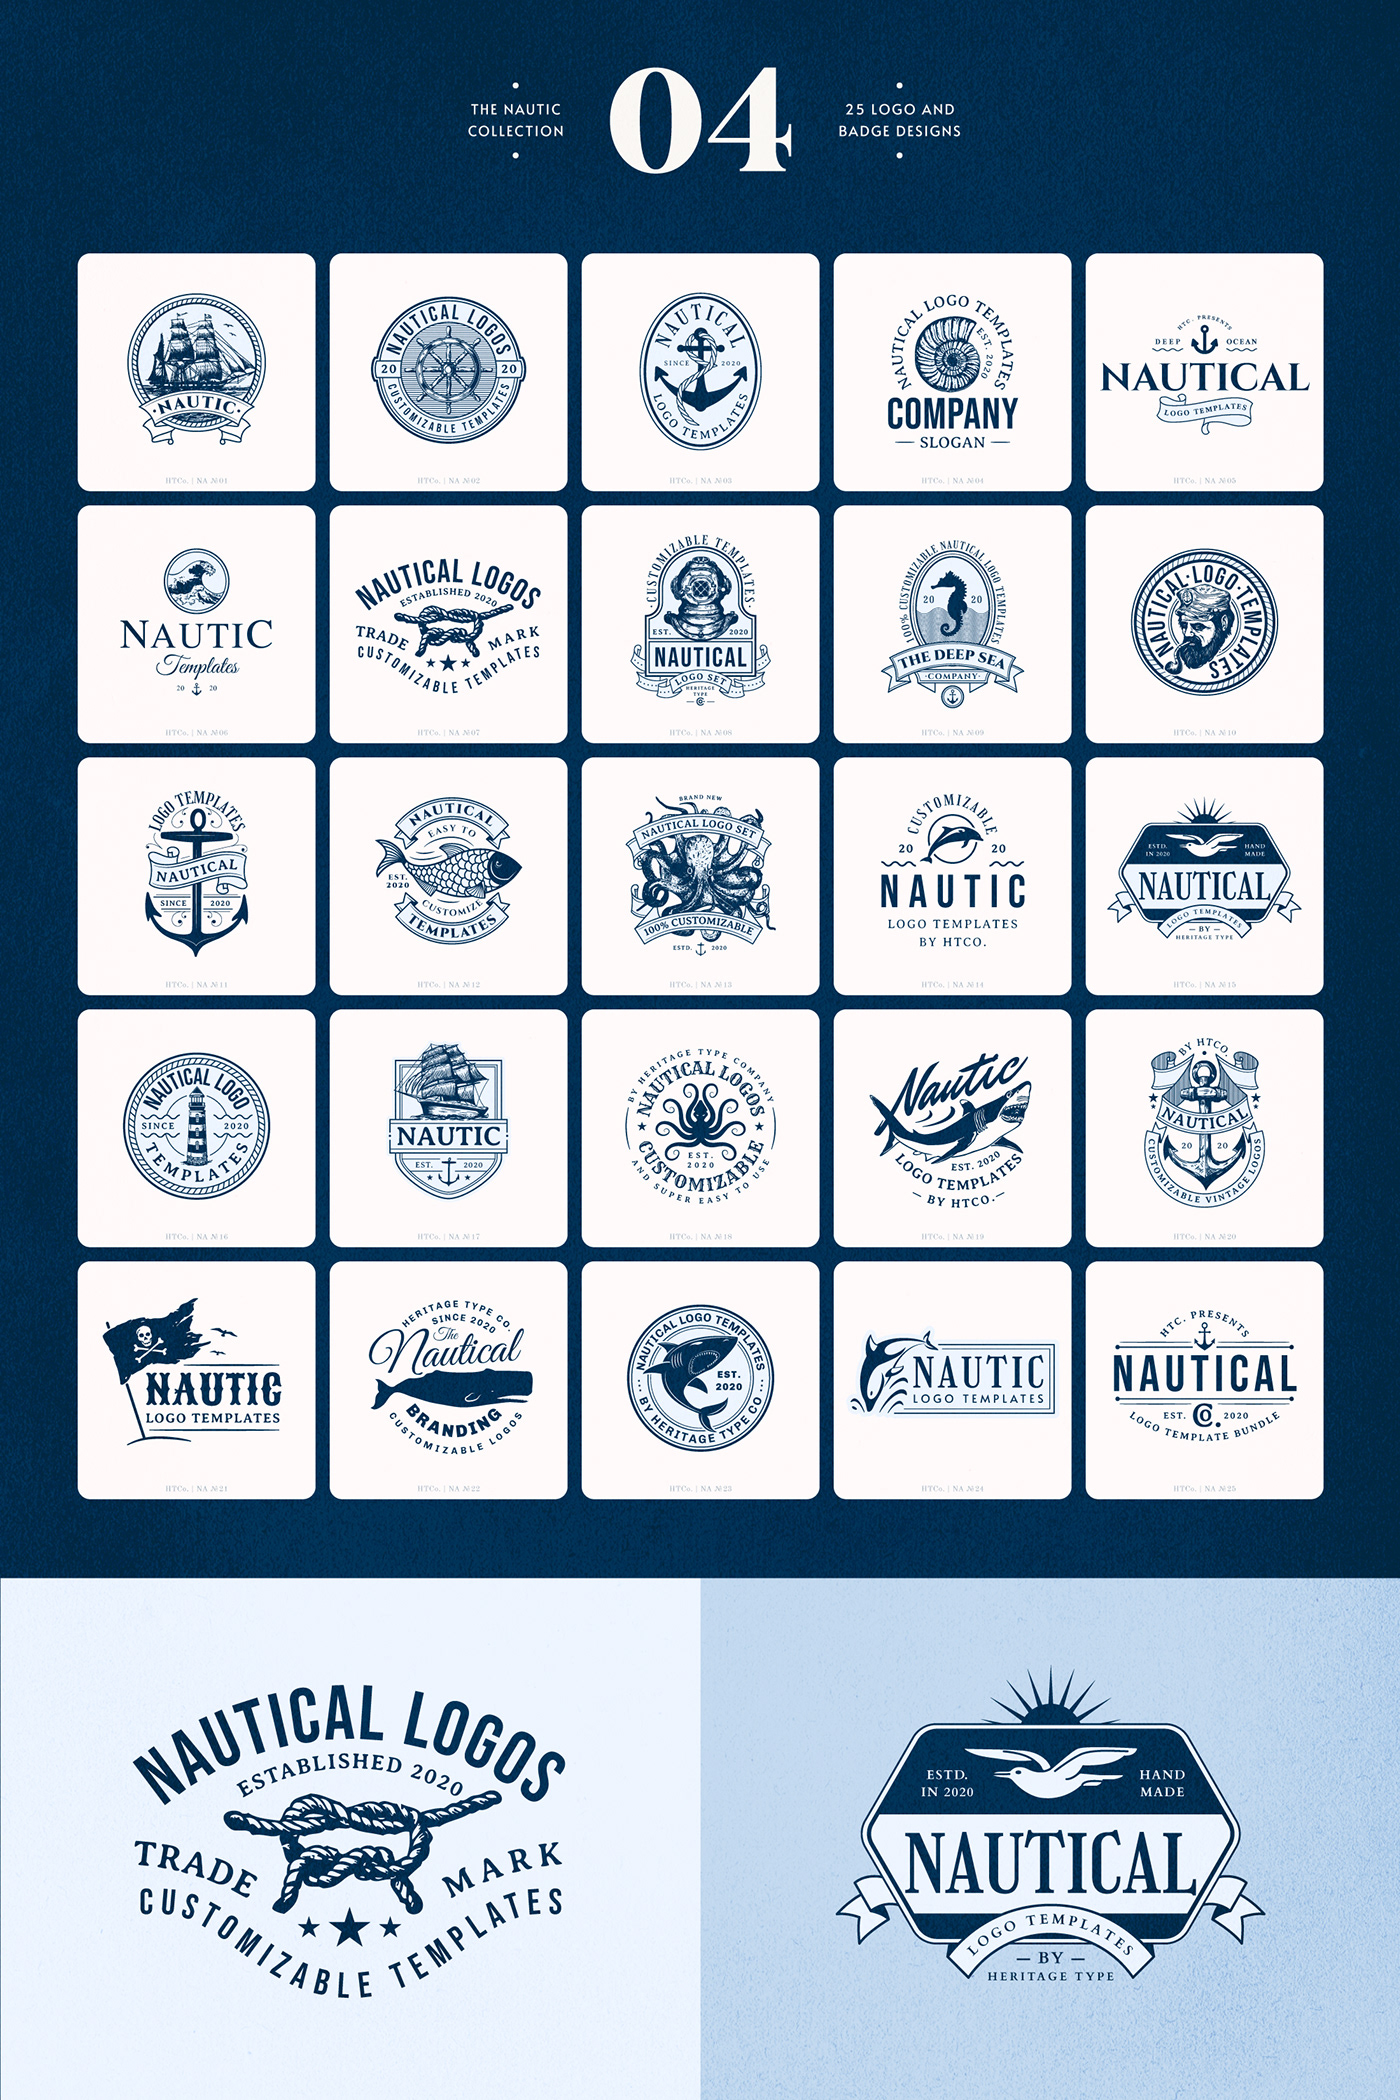 A collection of nautical logo templates